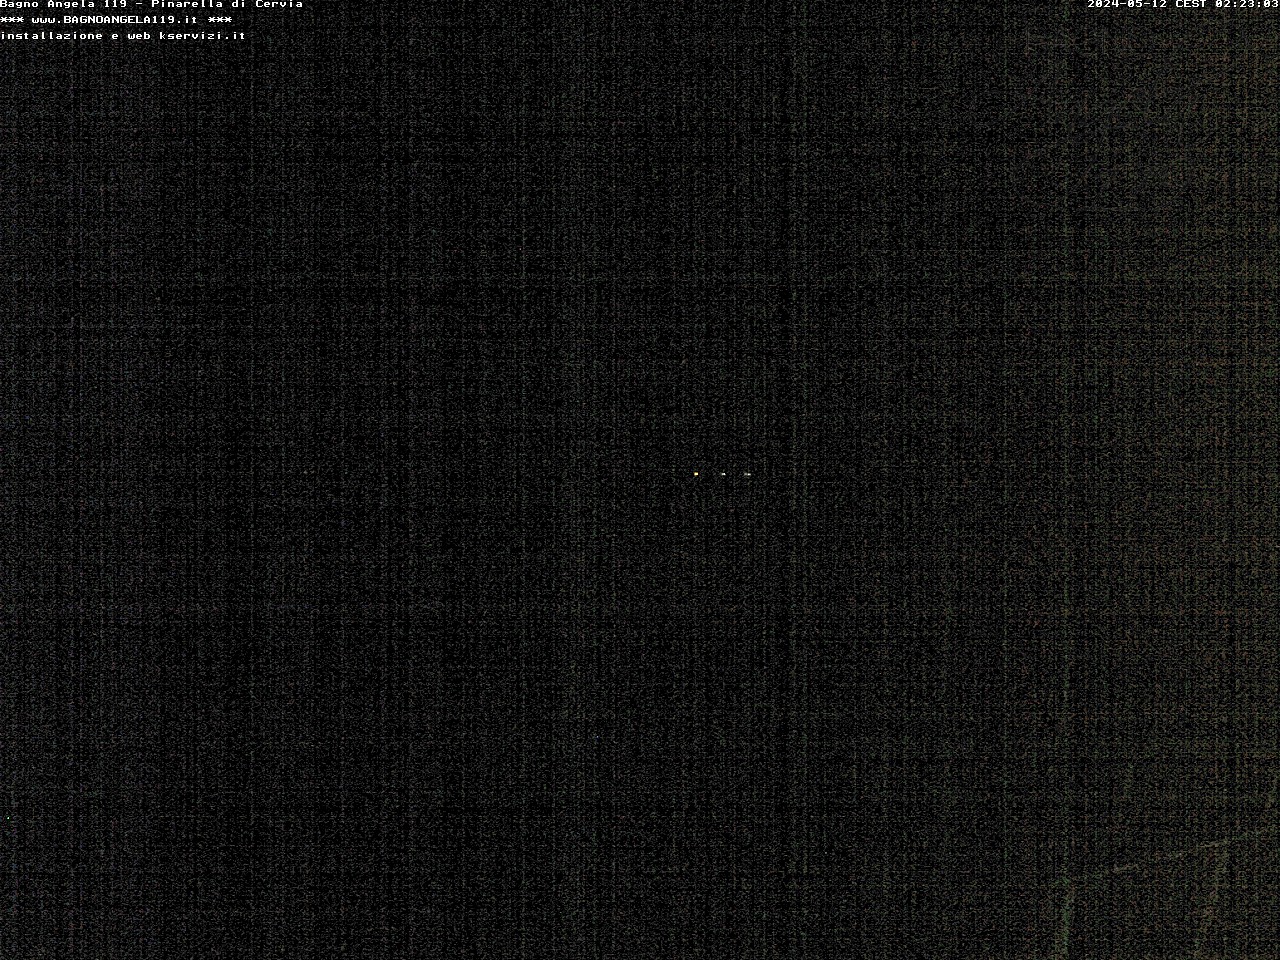 Pinarella di Cervia Tor. 02:23